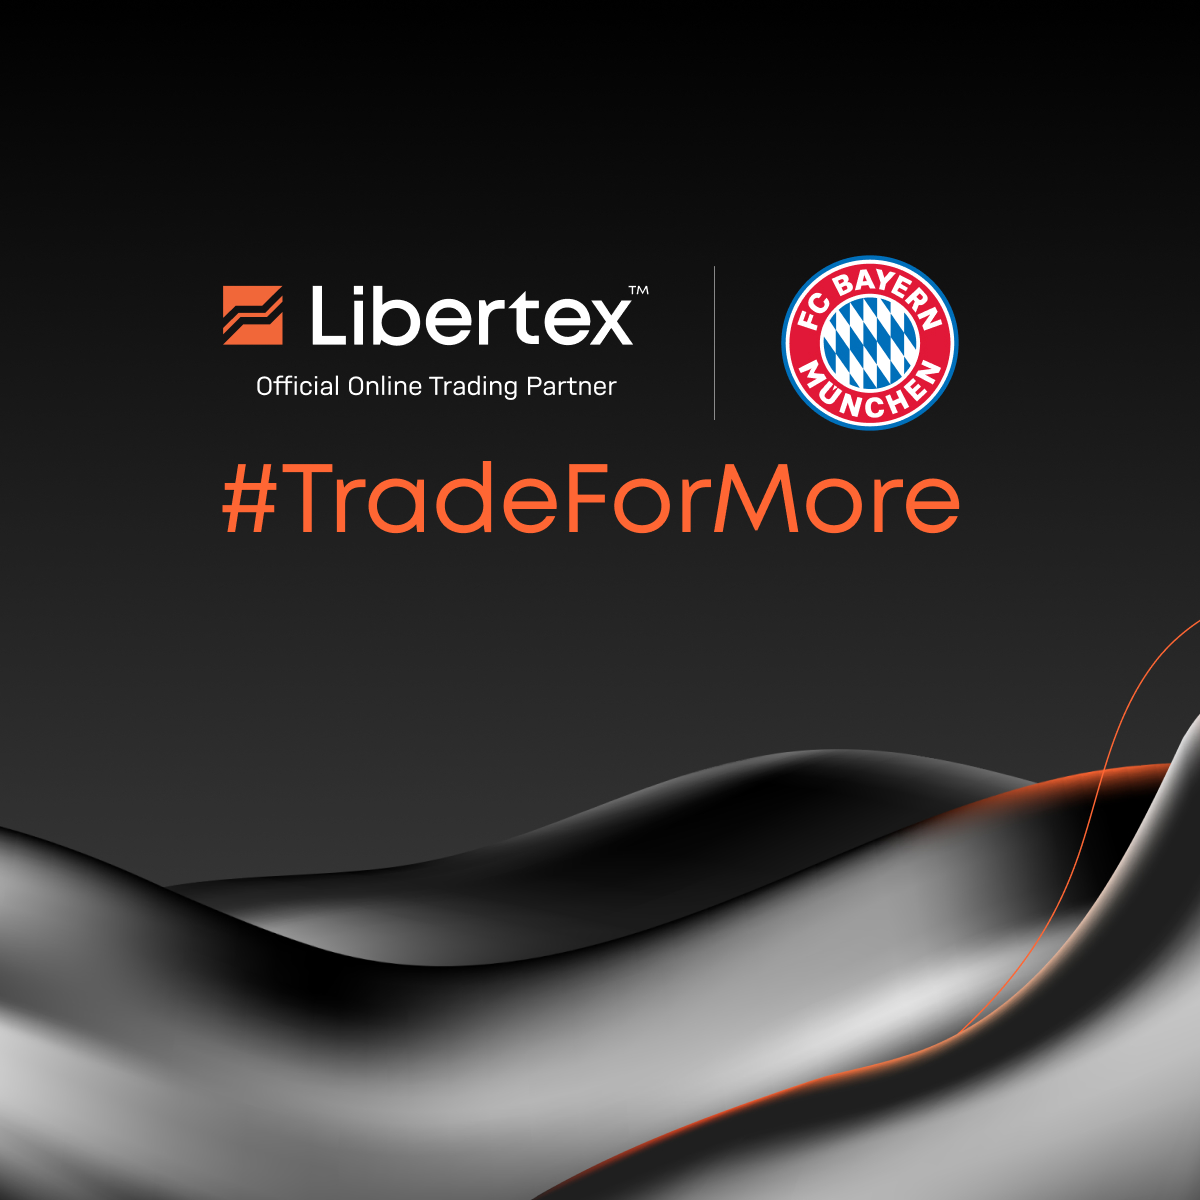 libertex online trading forex bitcoin cfd)